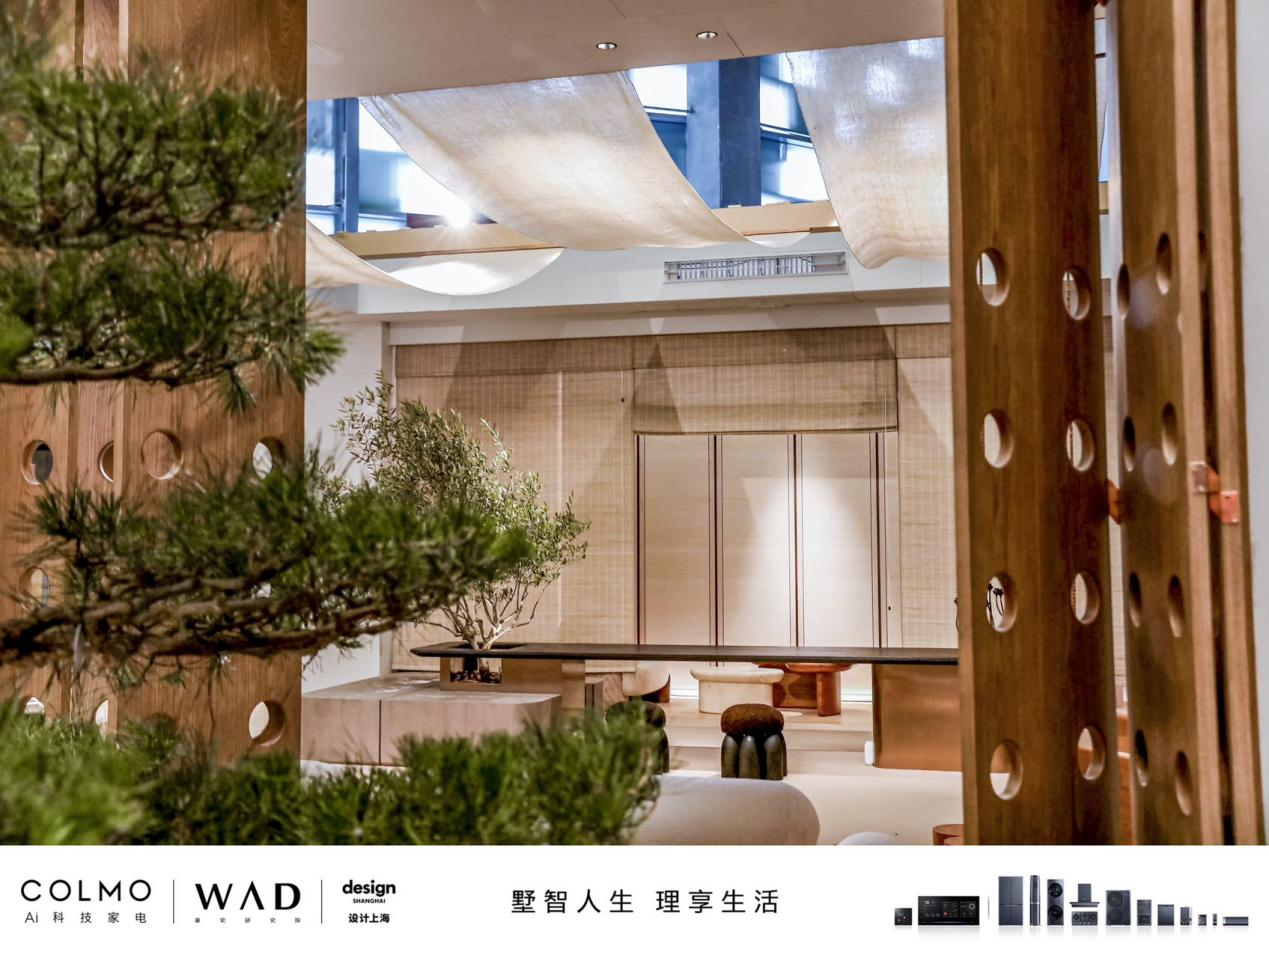 COLMO与WAD于“设计上海”联手打造“豪宅精造空间“，共同诠释野奢风格的理享内涵